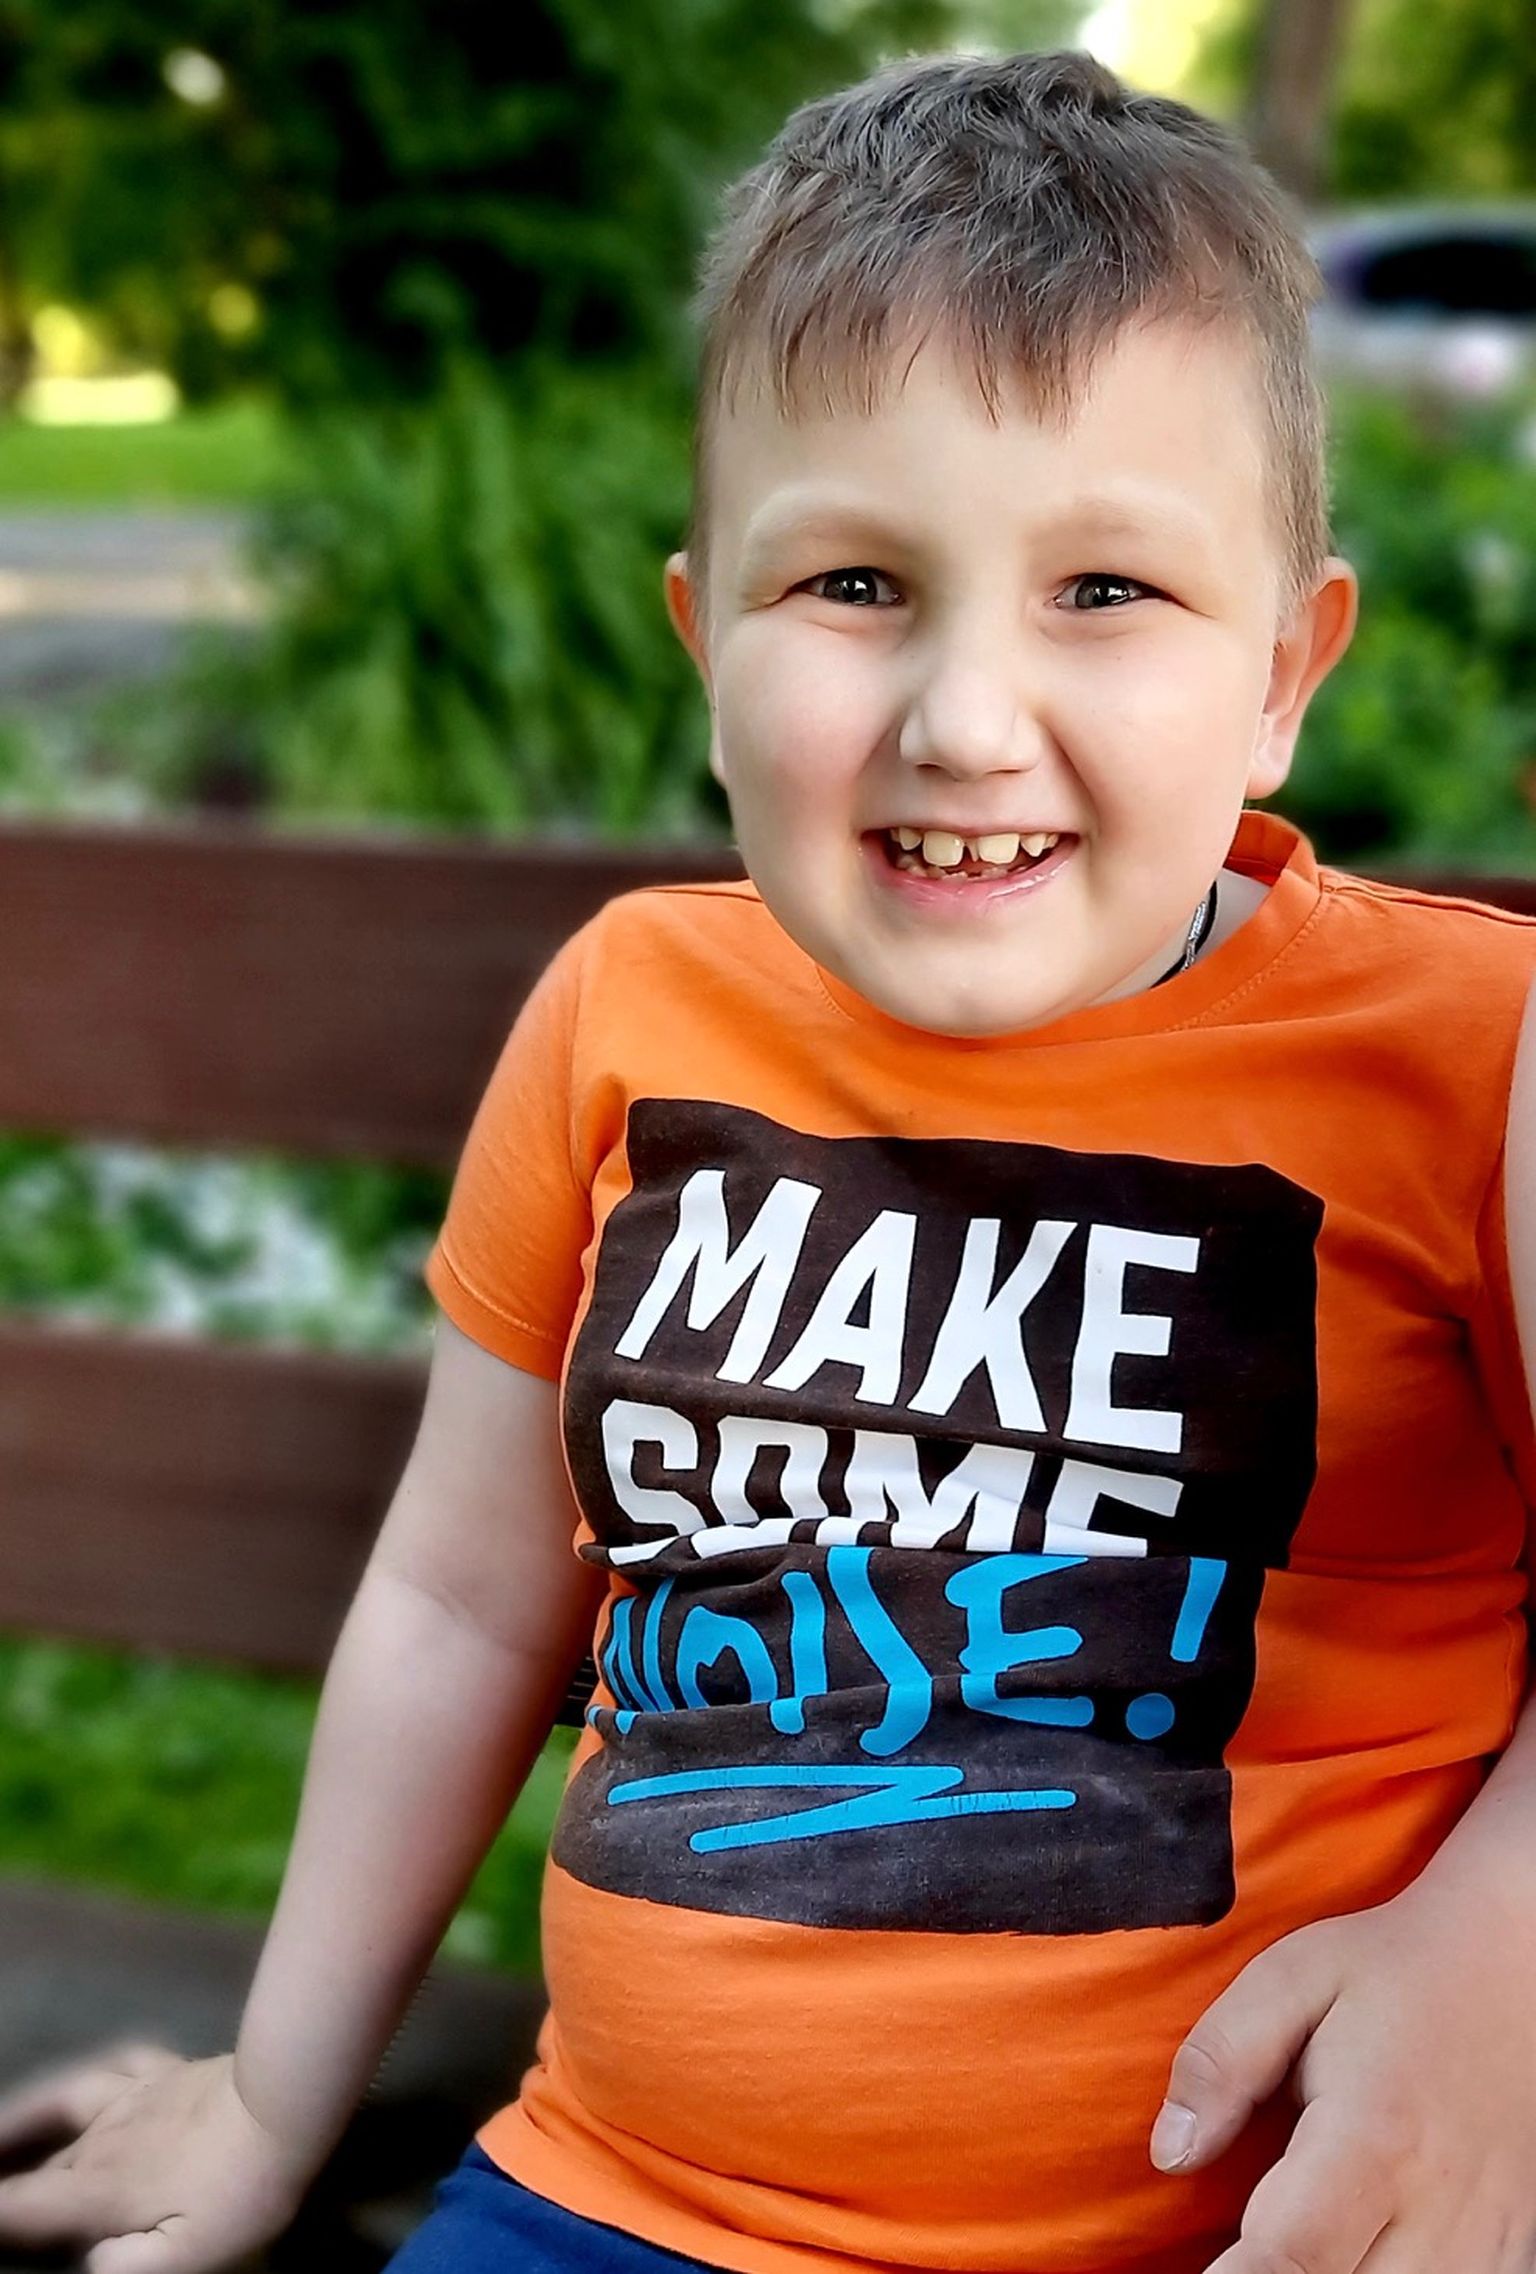 7-aastane Artjom vajab ajukasvaja raviks annetusi.